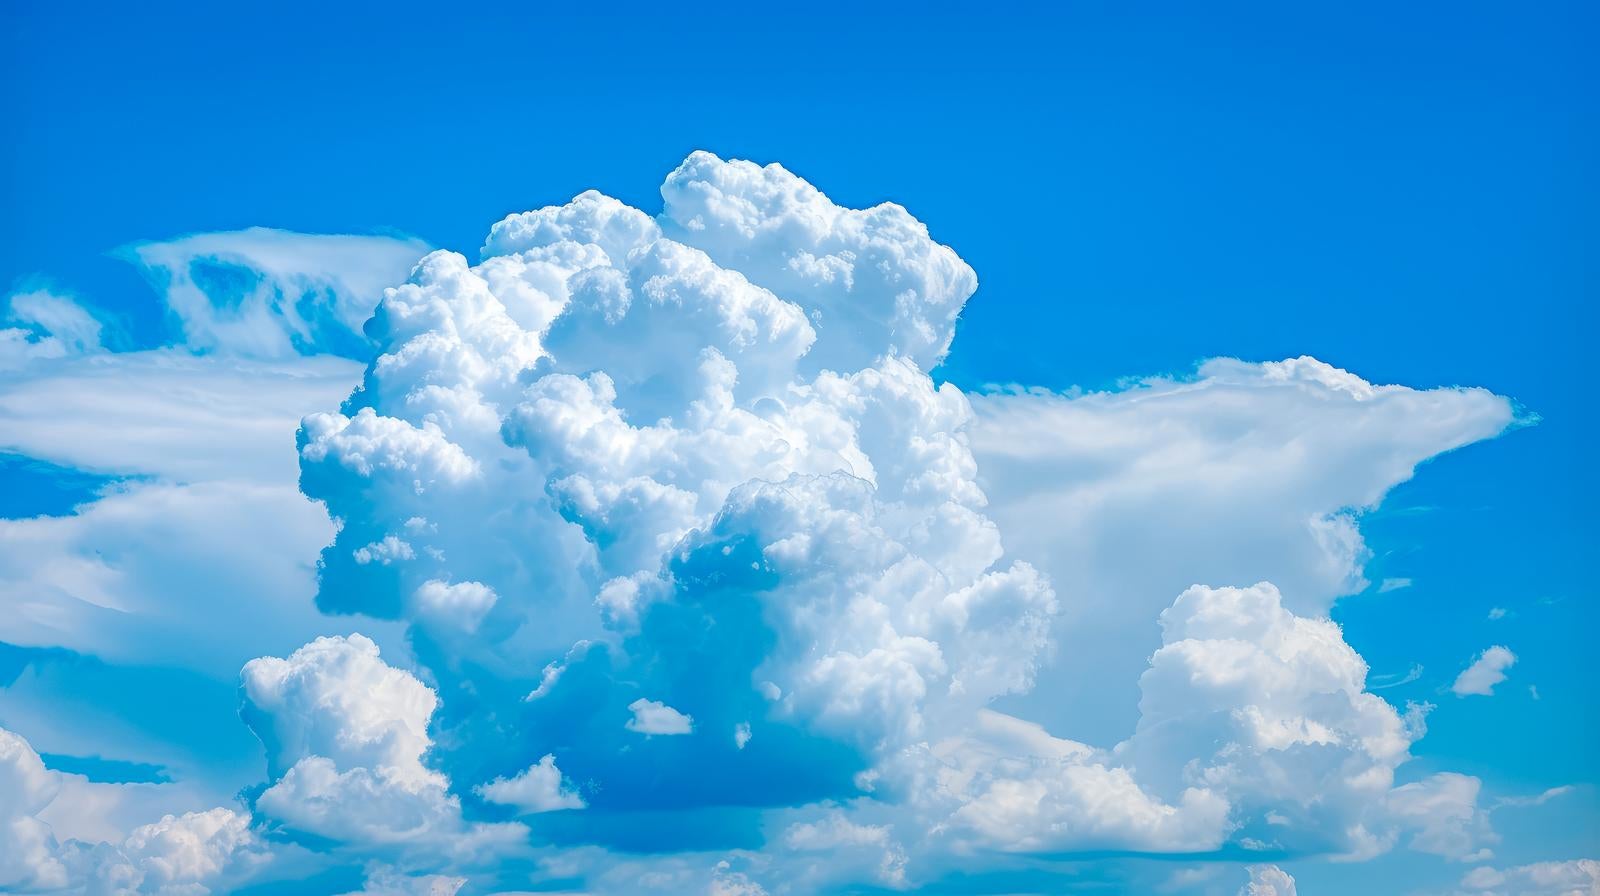 「空高い入道雲」の写真